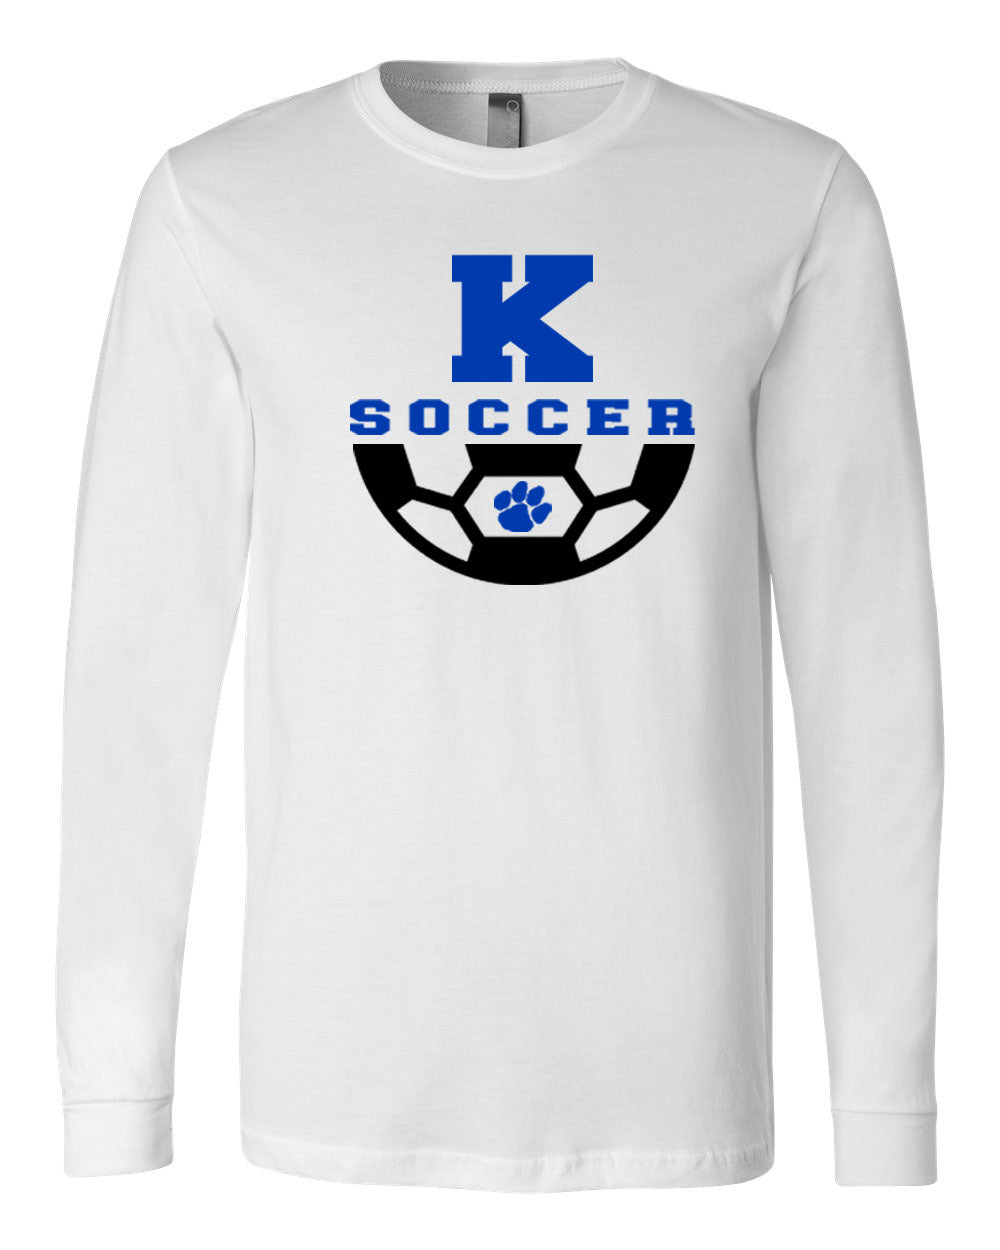 Kittatinny Soccer Design 4 Long Sleeve Shirt